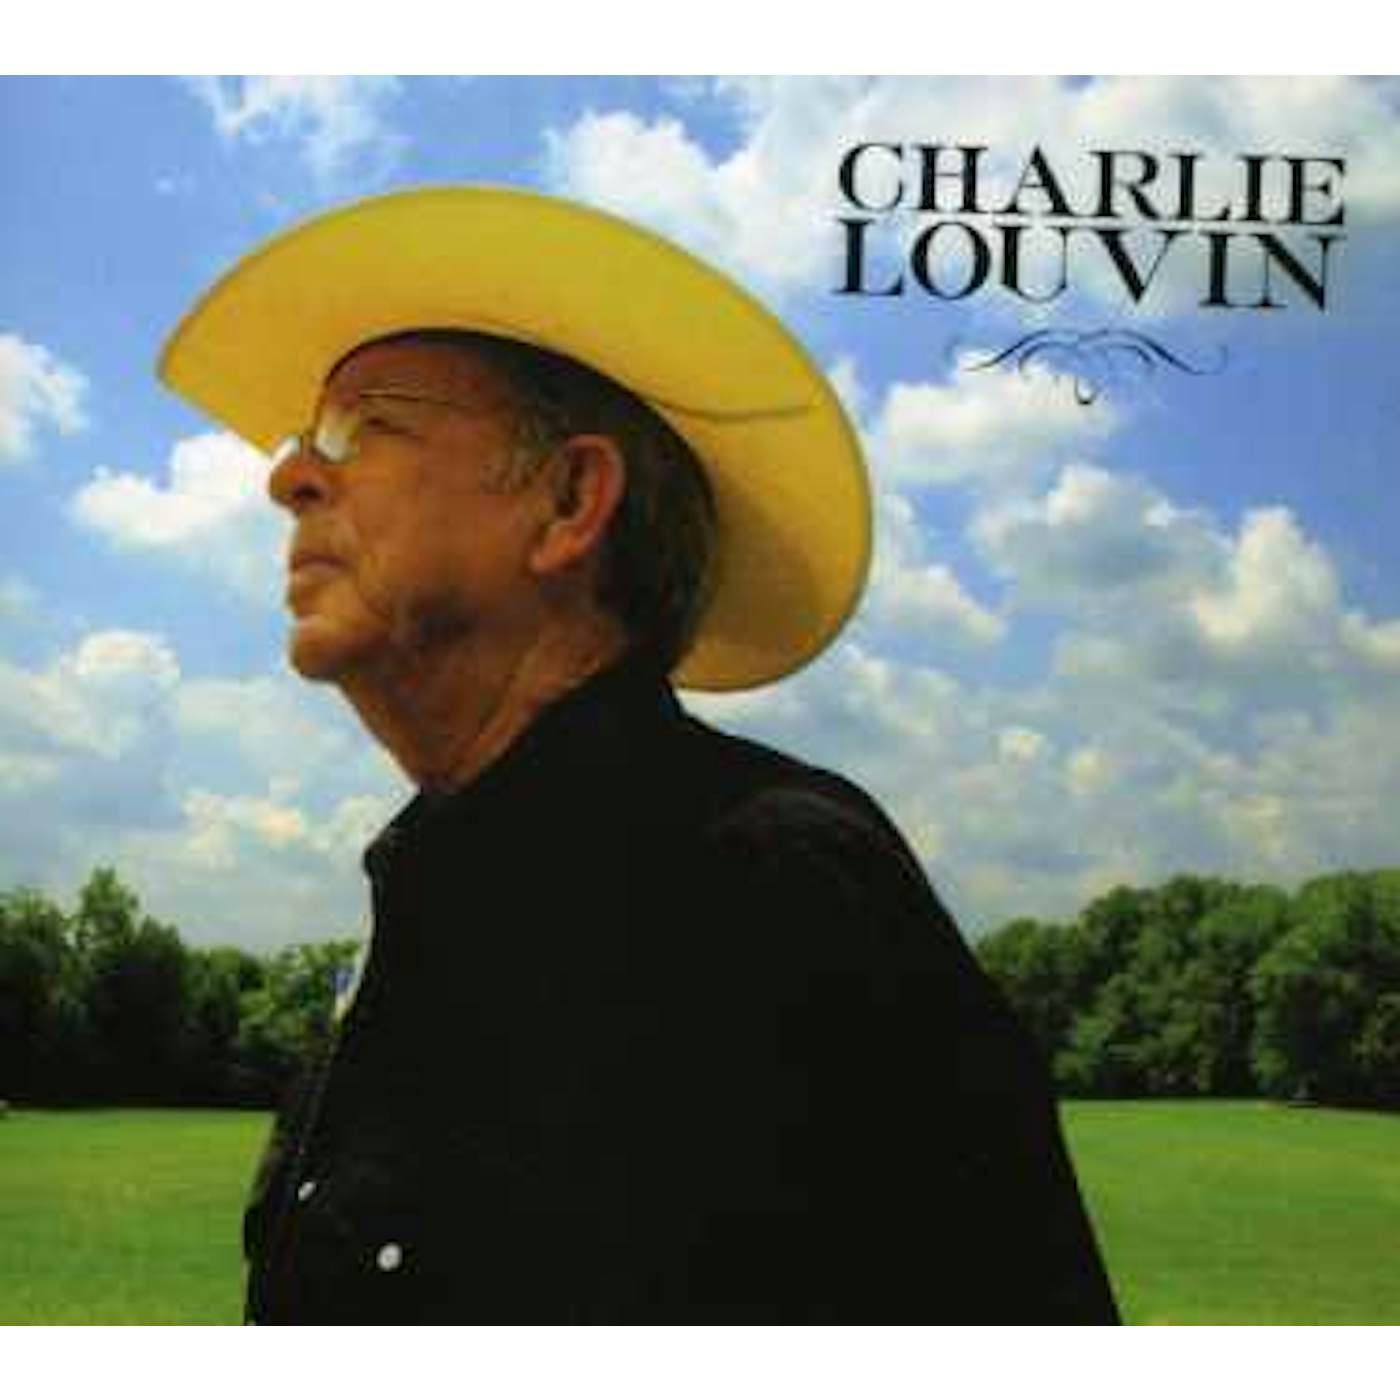 CHARLIE LOUVIN CD